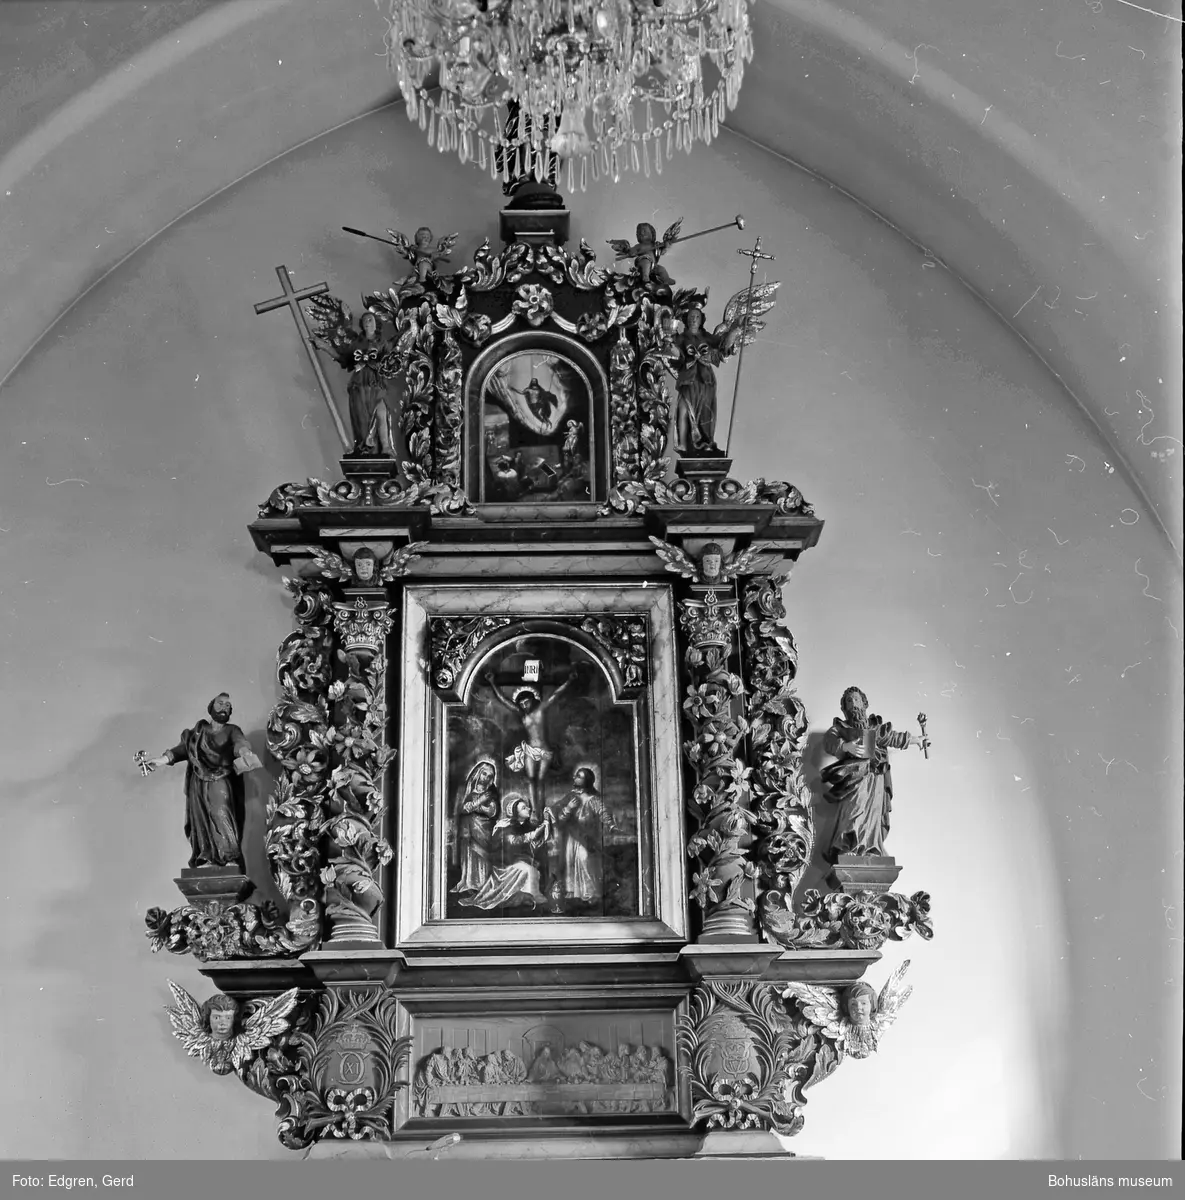 Text till bilden: "Tegneby kyrka. Altartavlan. Niels Läs 1696? och Erik Eriksson Grijsl".